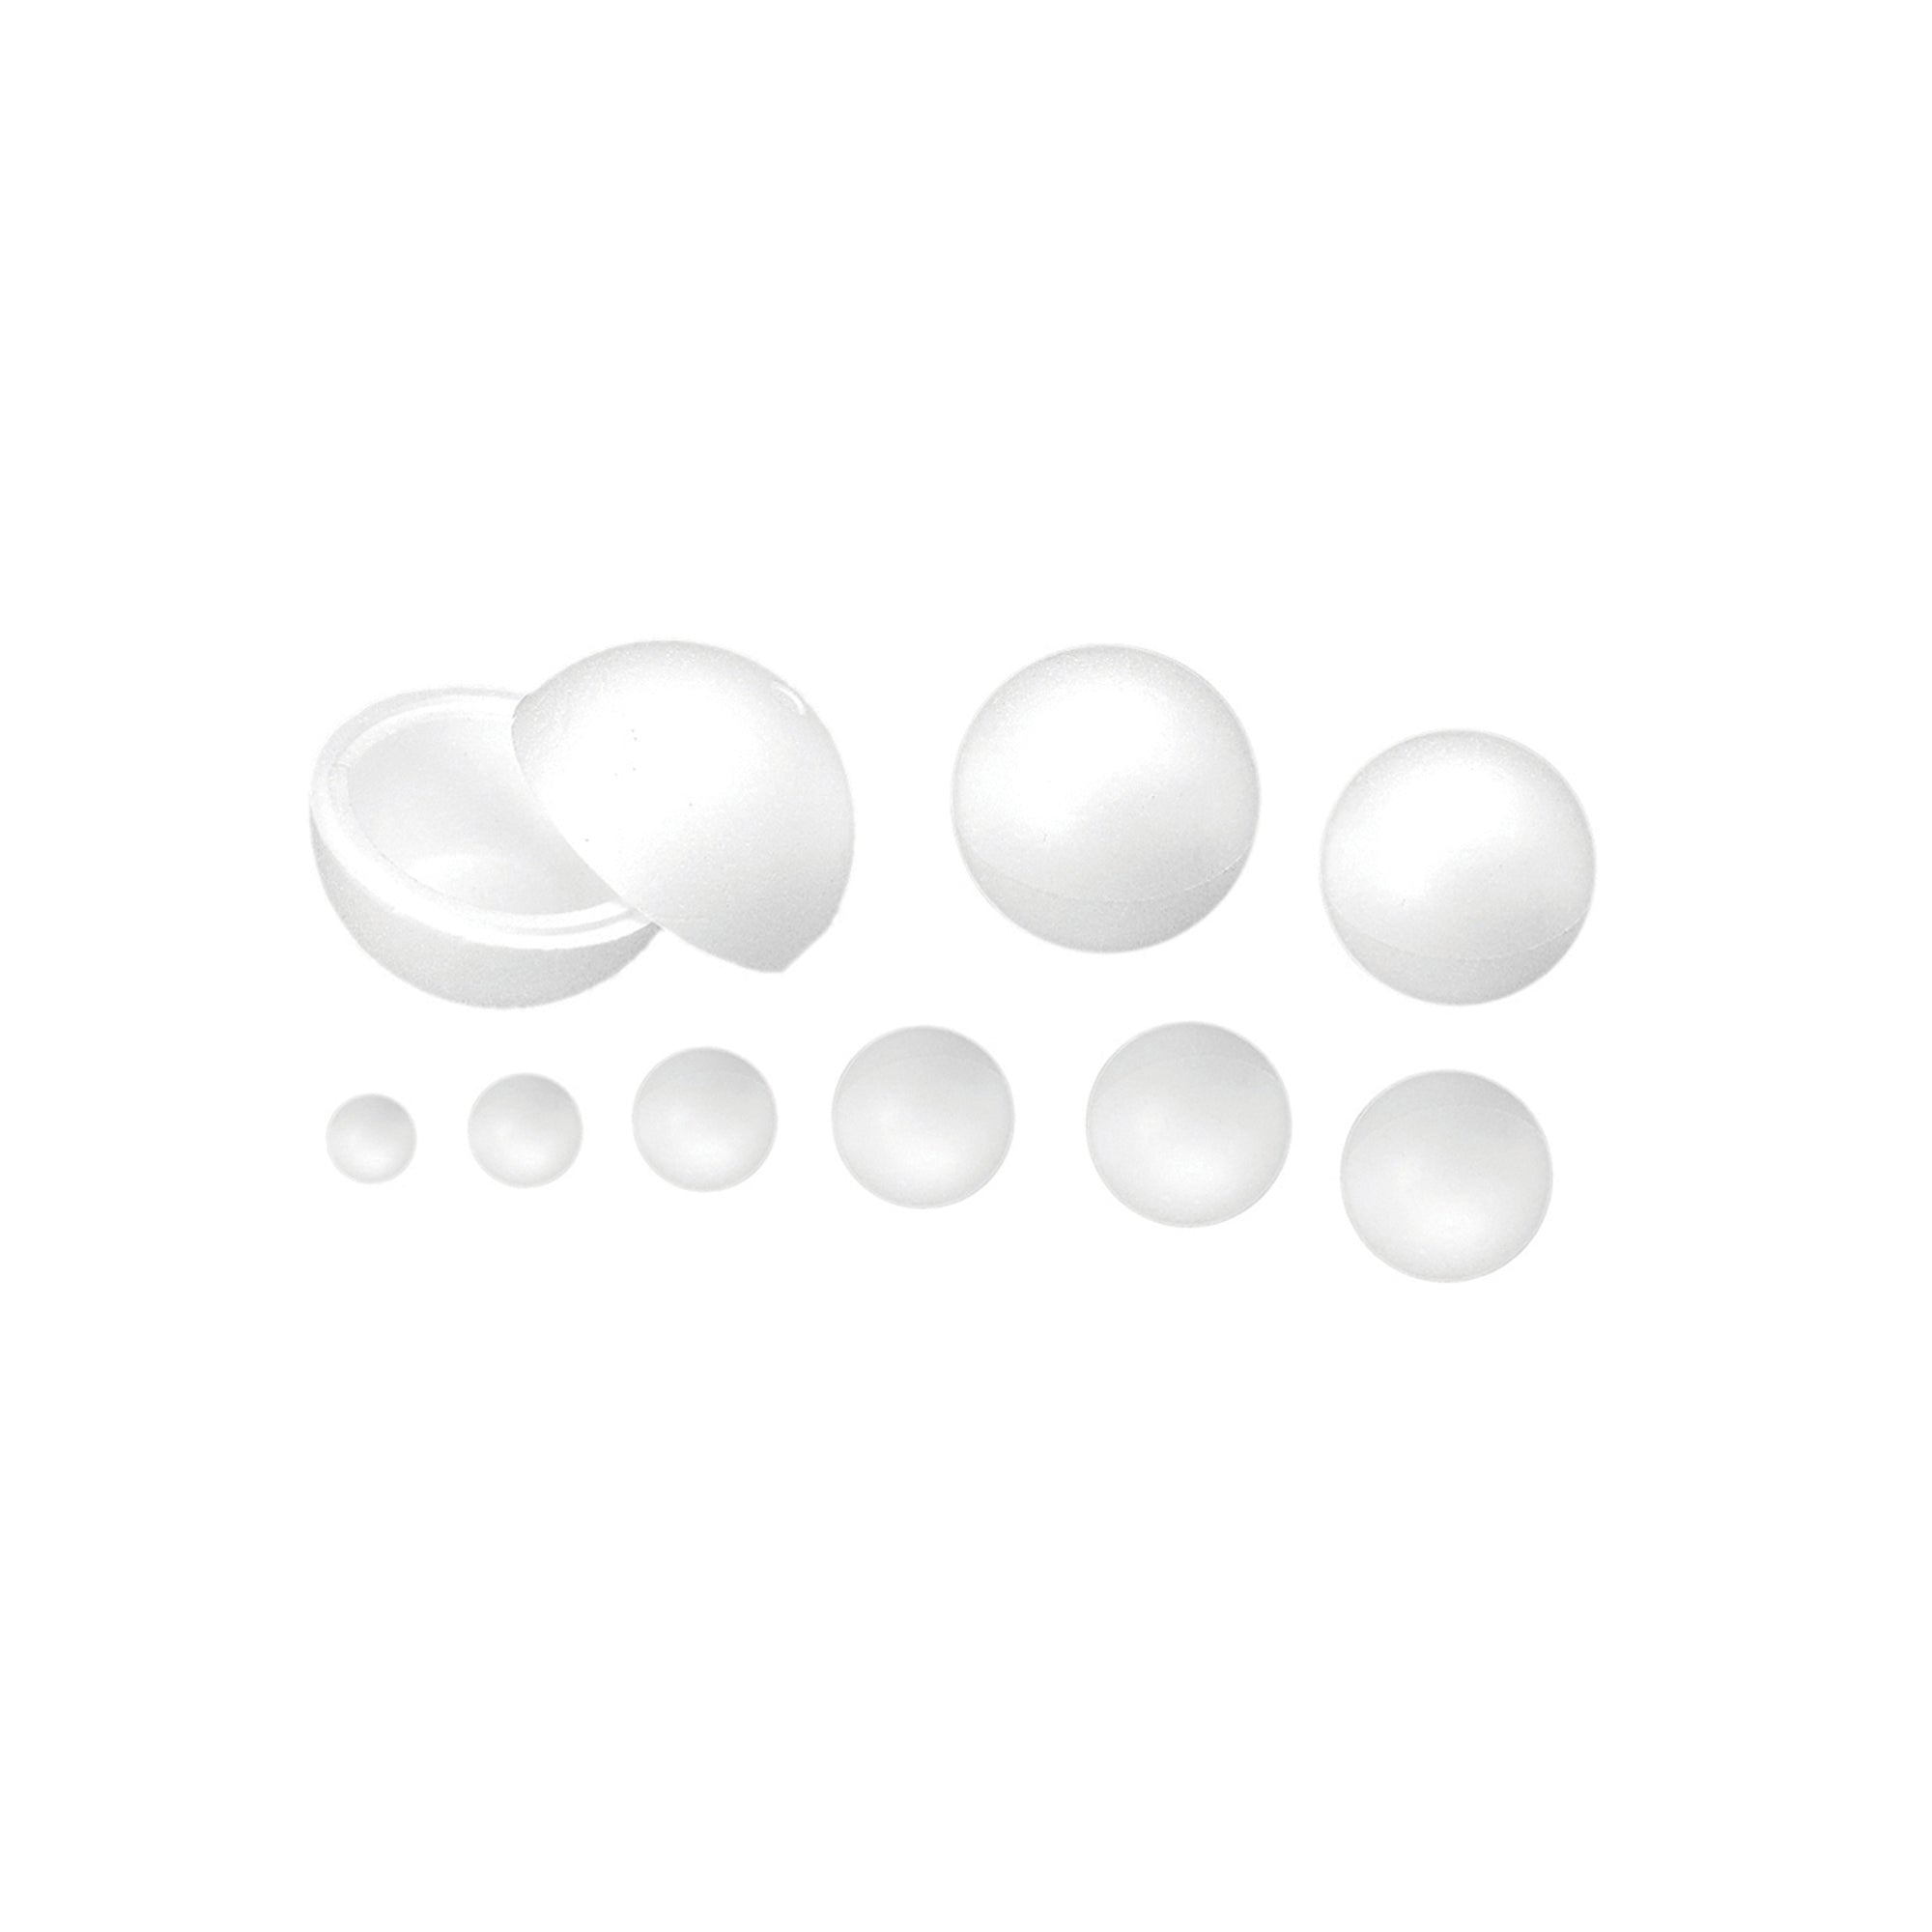 ri-plast-sfera-polistirolo-espanso-d120mm-ri-plast